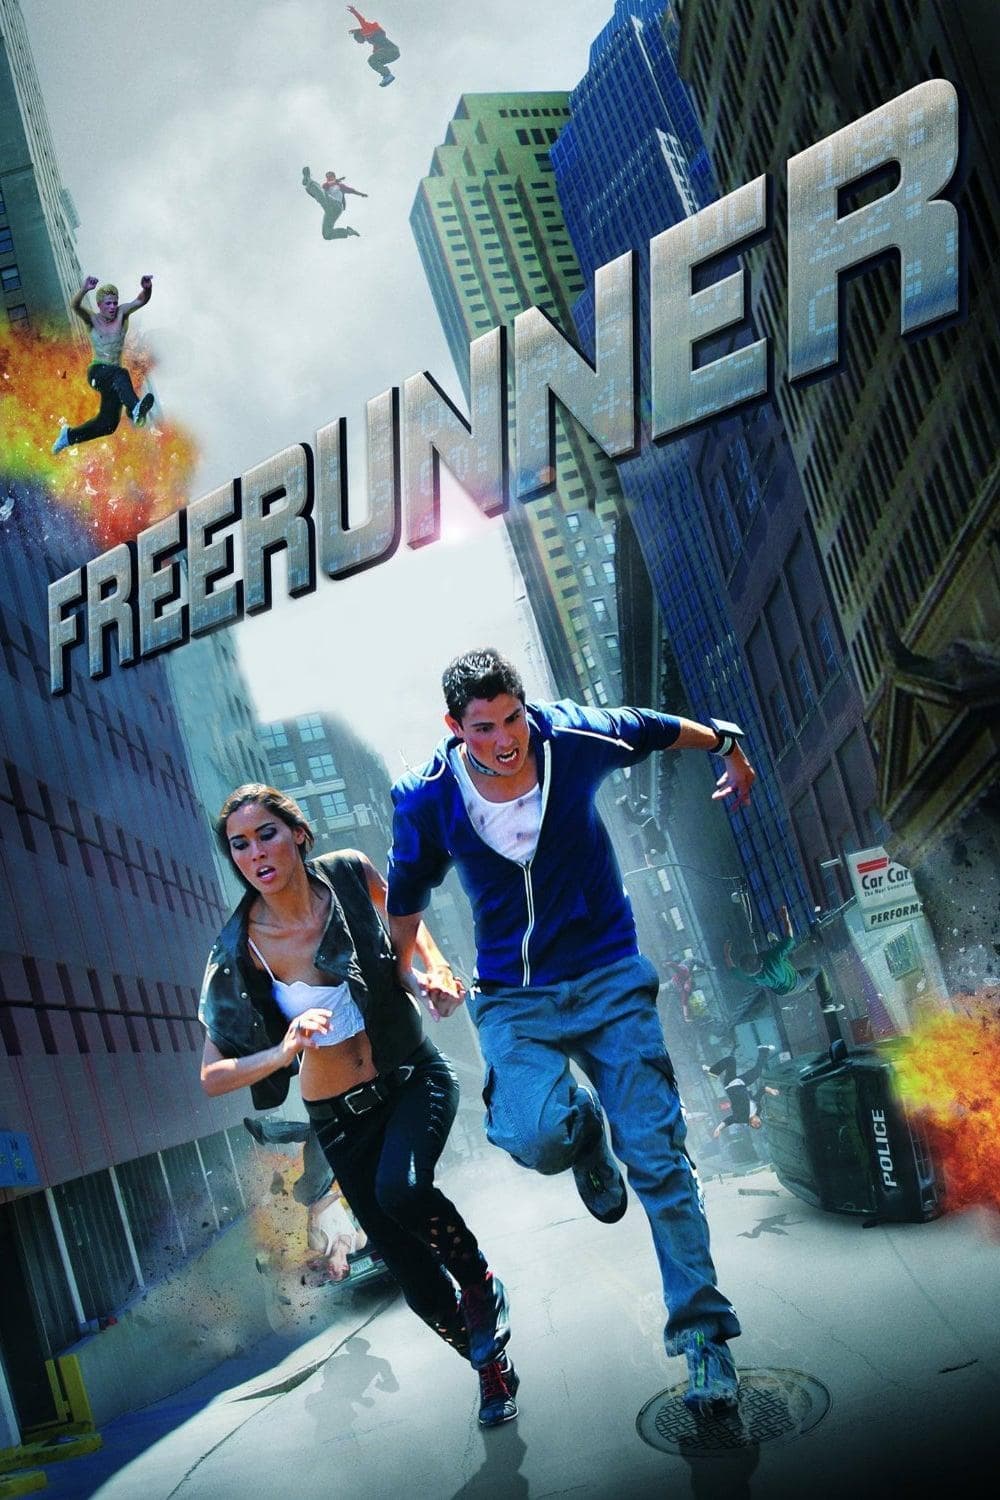 Freerunner (2011)